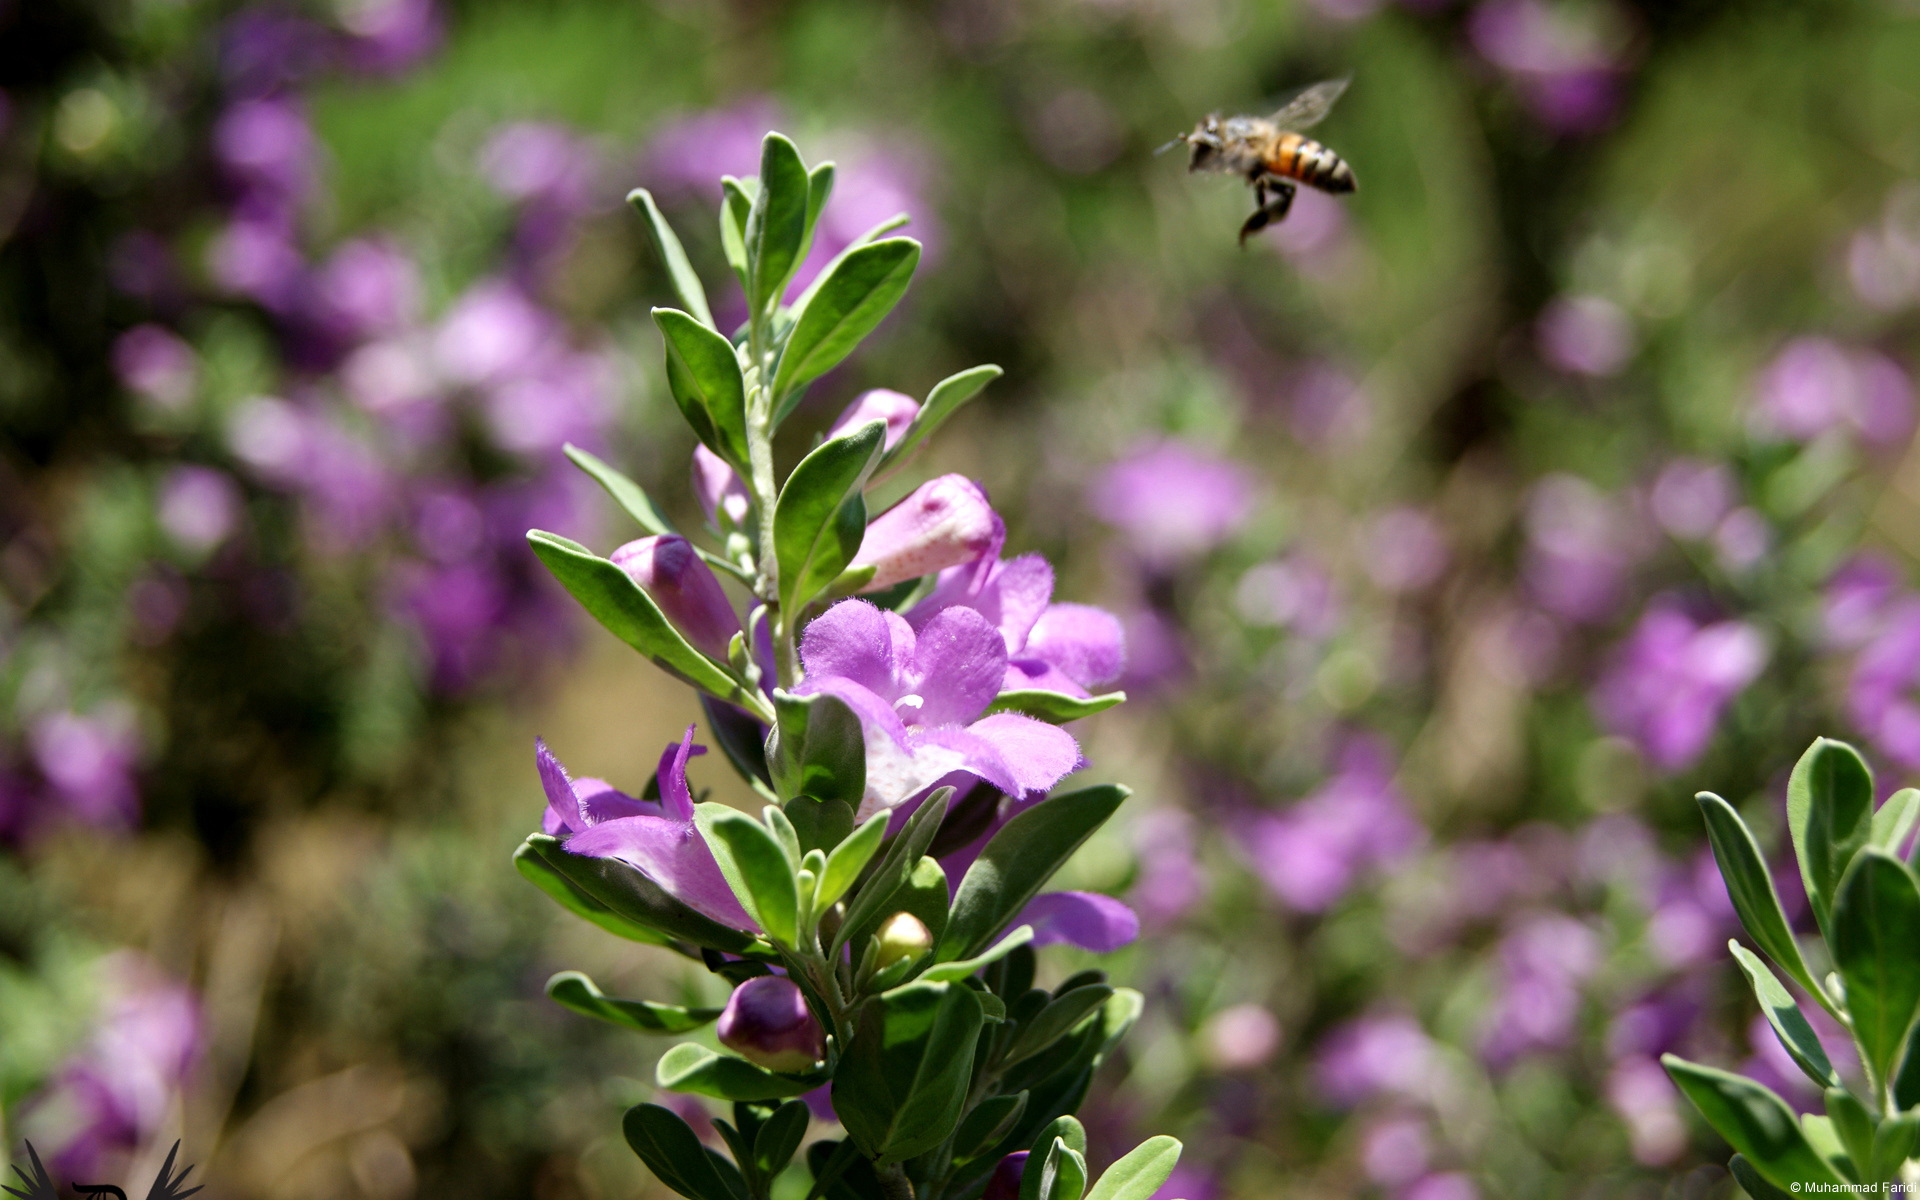 Buzzing Bee